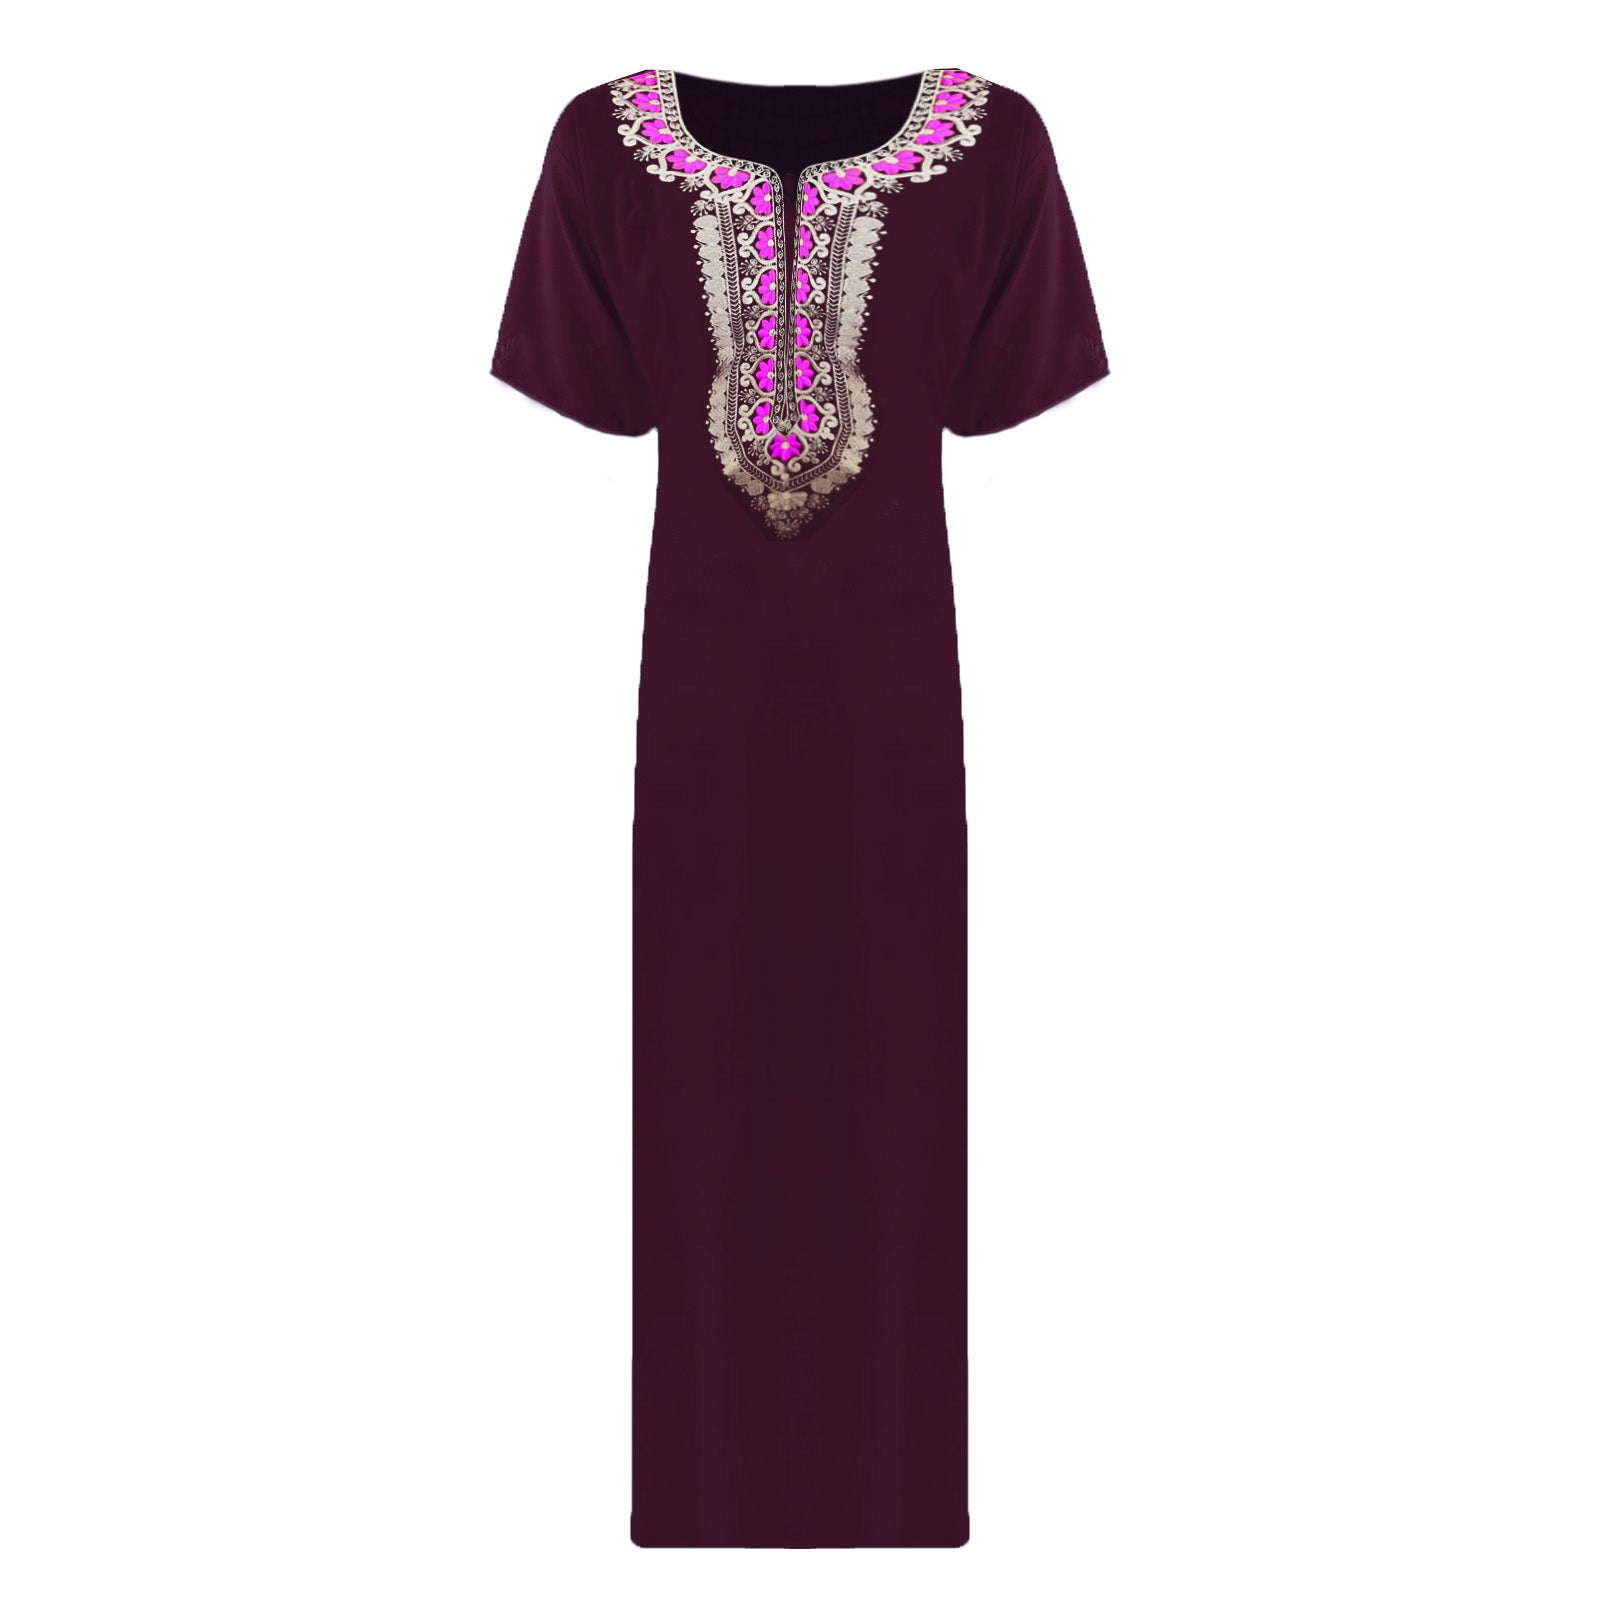 Dark Purple / L Women Nightwear Floral Print 100% Cotton Long Sleeve Long Nightdress The Orange Tags